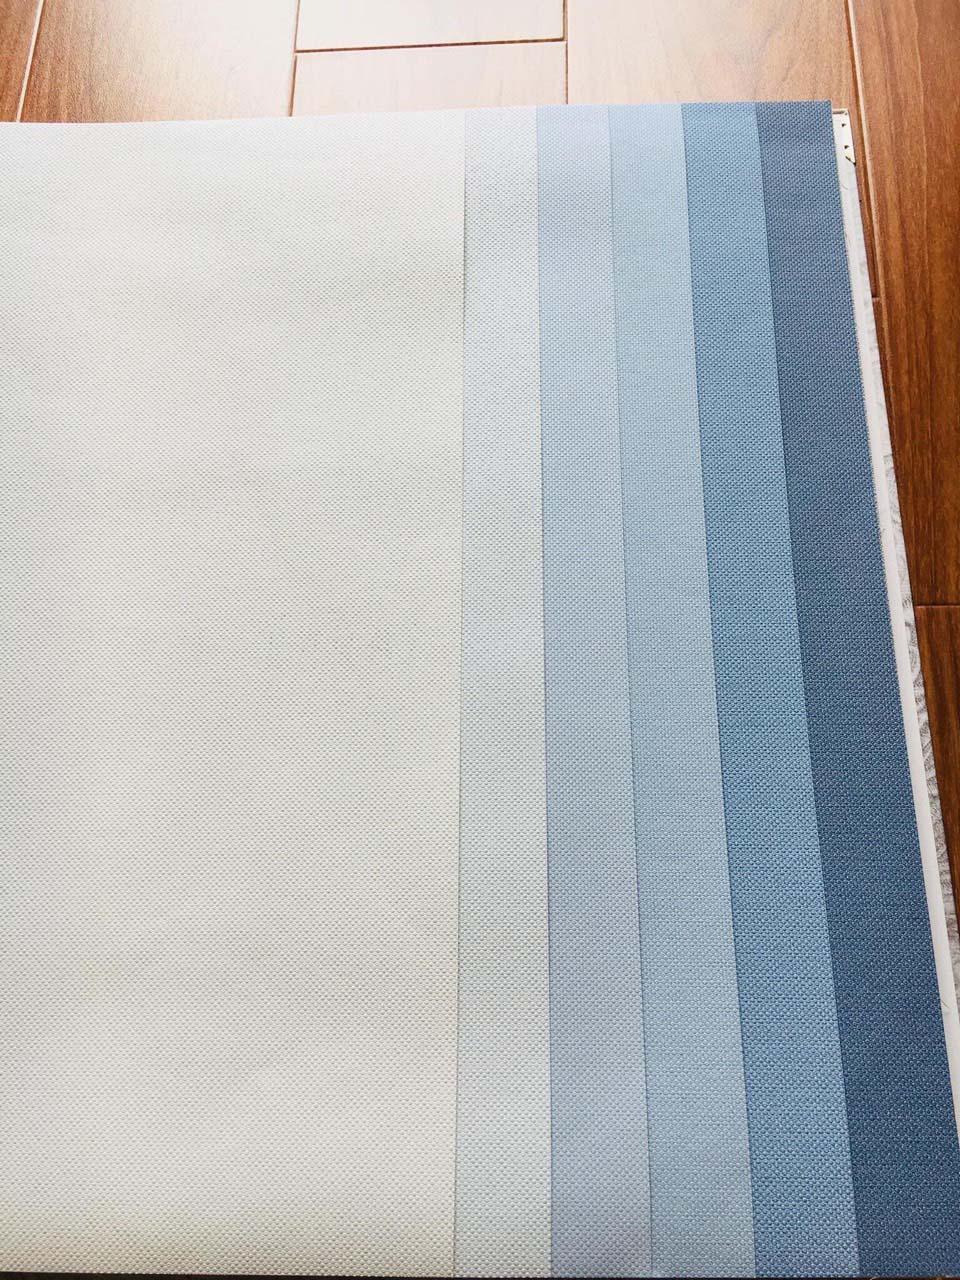 giấy dán tường Hàn Quốc màu xanh